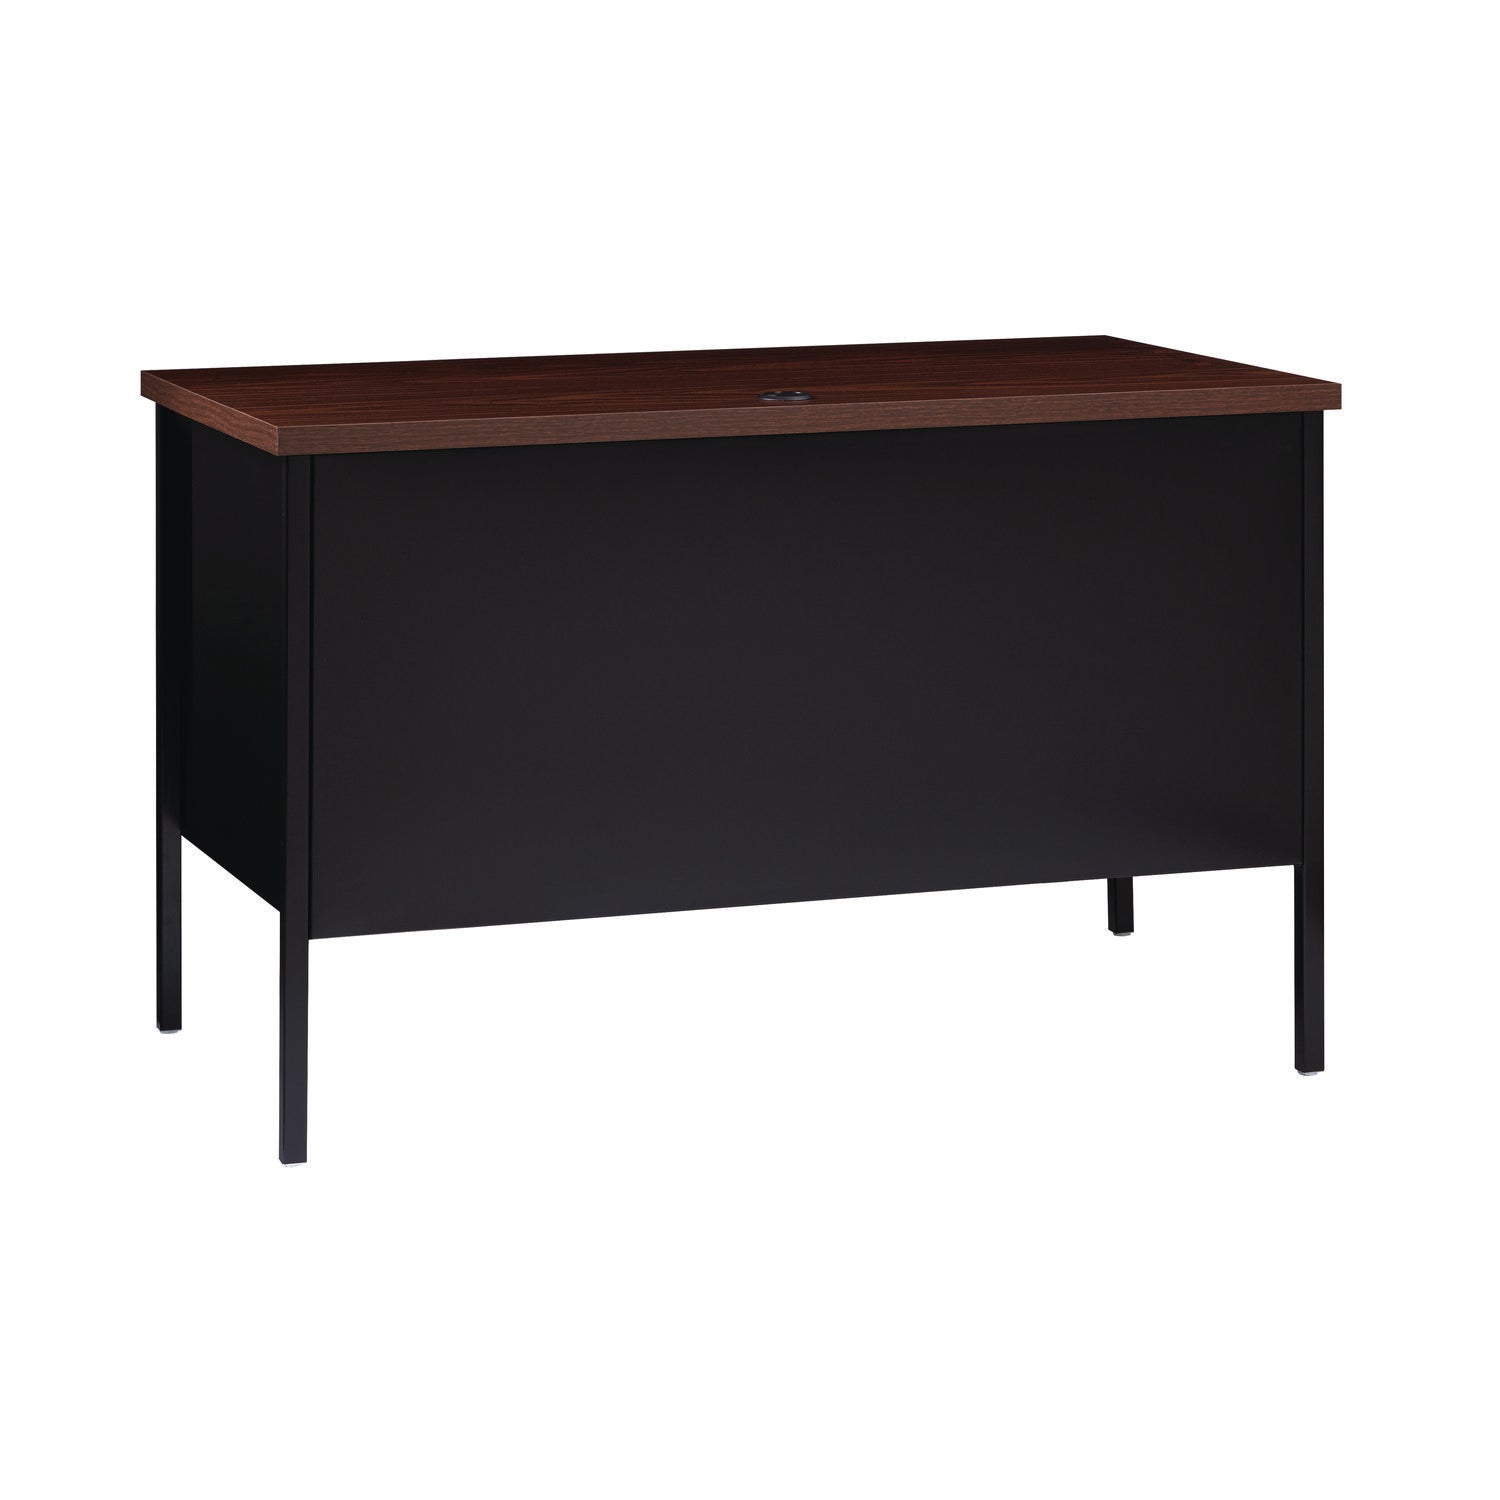 single-pedestal-steel-desk-455-x-24-x-295-mocha-black-black-legs_alehsd4524bm - 3